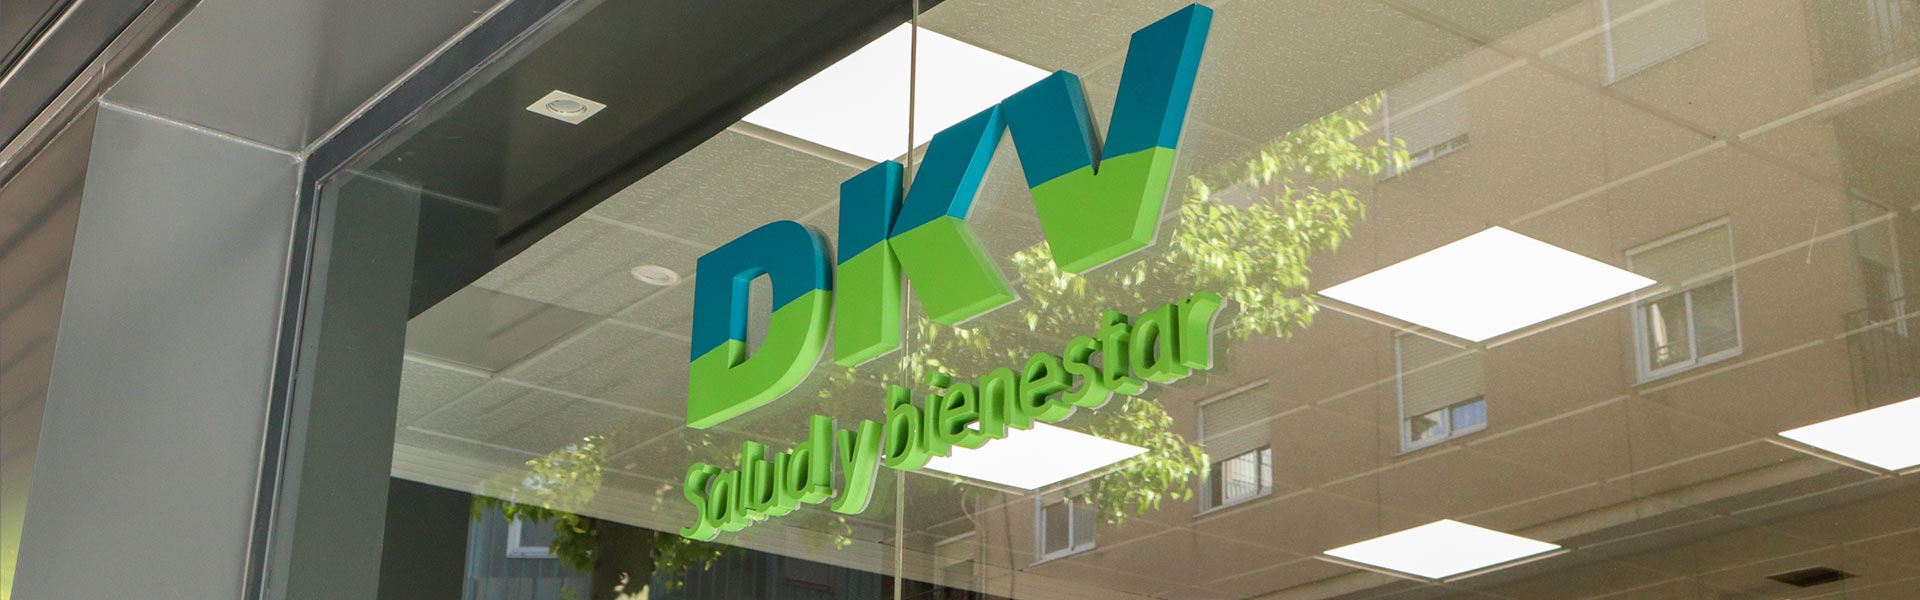 DKV Salud y bienestar, oficina de DKV Seguros en Elche